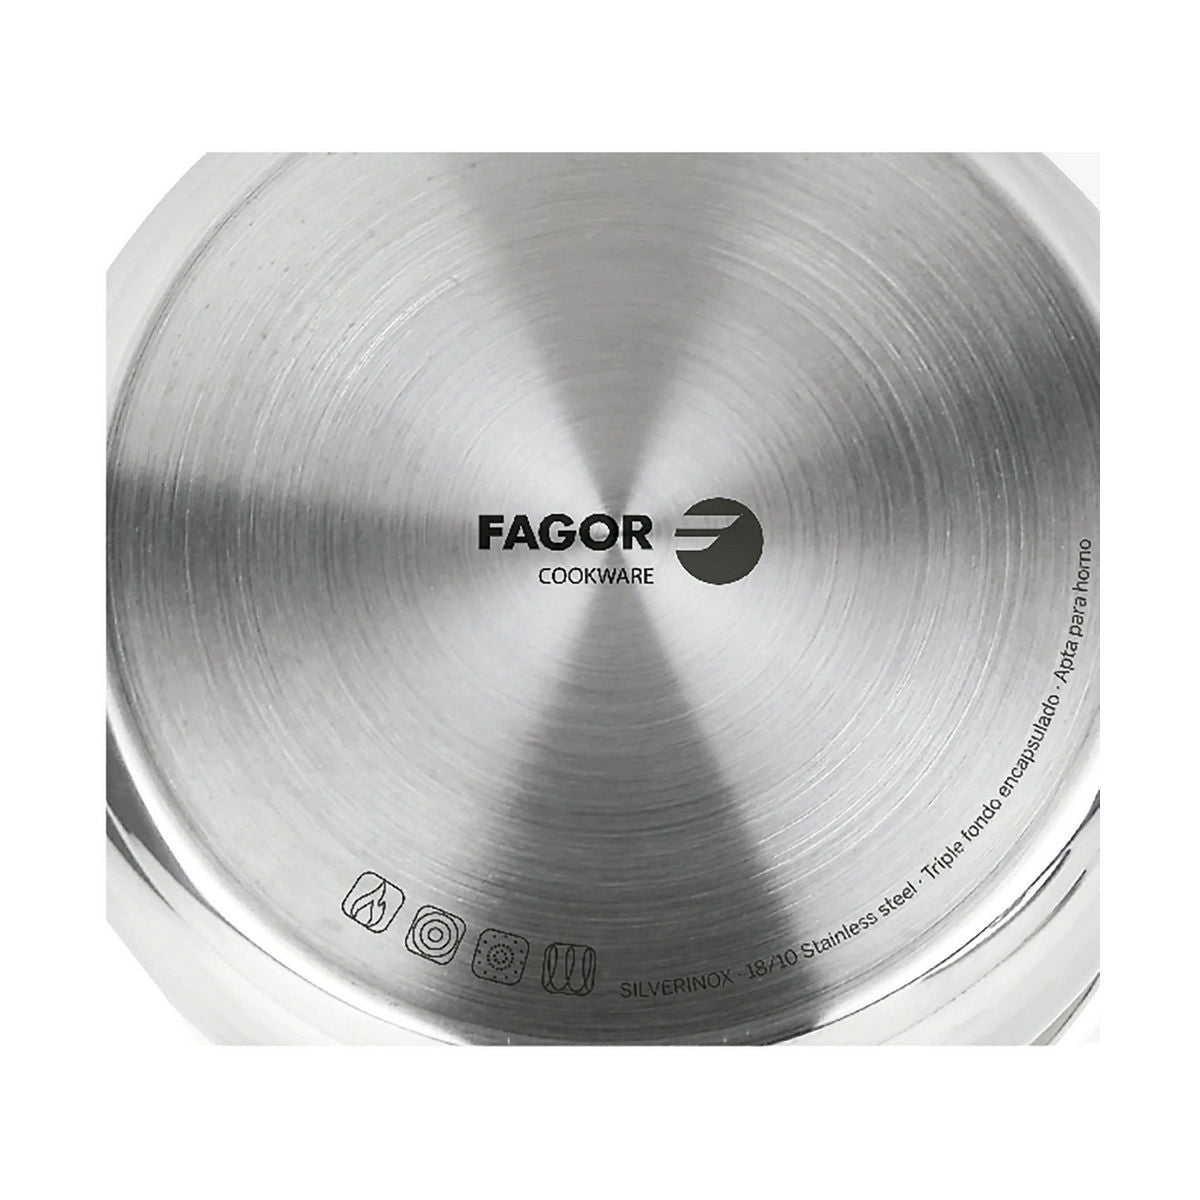 FAGOR Saucepan Stainless Steel 18/10 Chrome (Ø 20 cm)